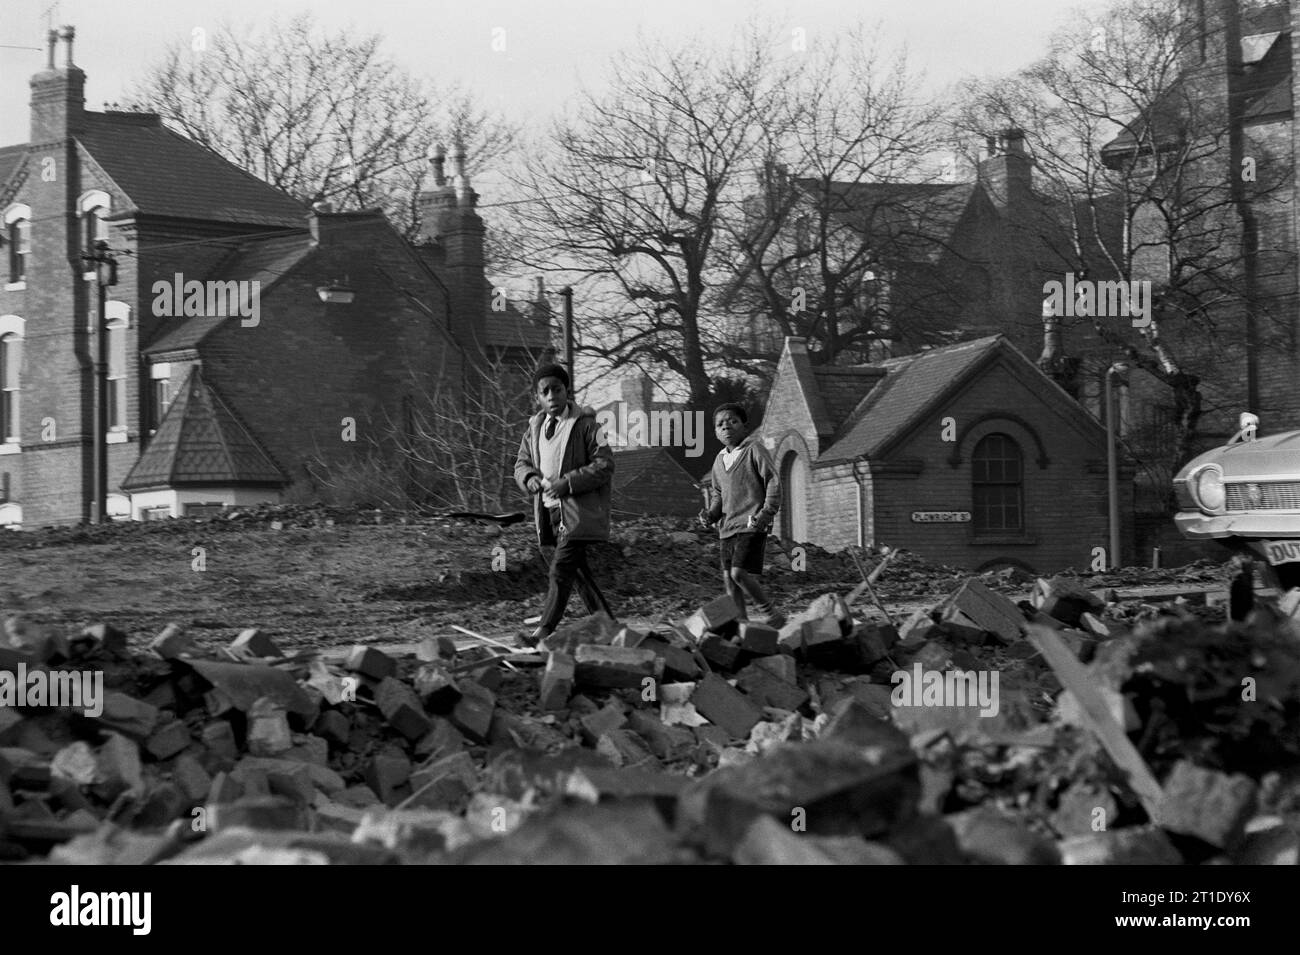 Deux écoliers mangeant des bonbons tout en rentrant chez eux à travers les décombres de démolition pendant le nettoyage des bidonvilles de St ann's, Nottingham. 1969-1972 Banque D'Images